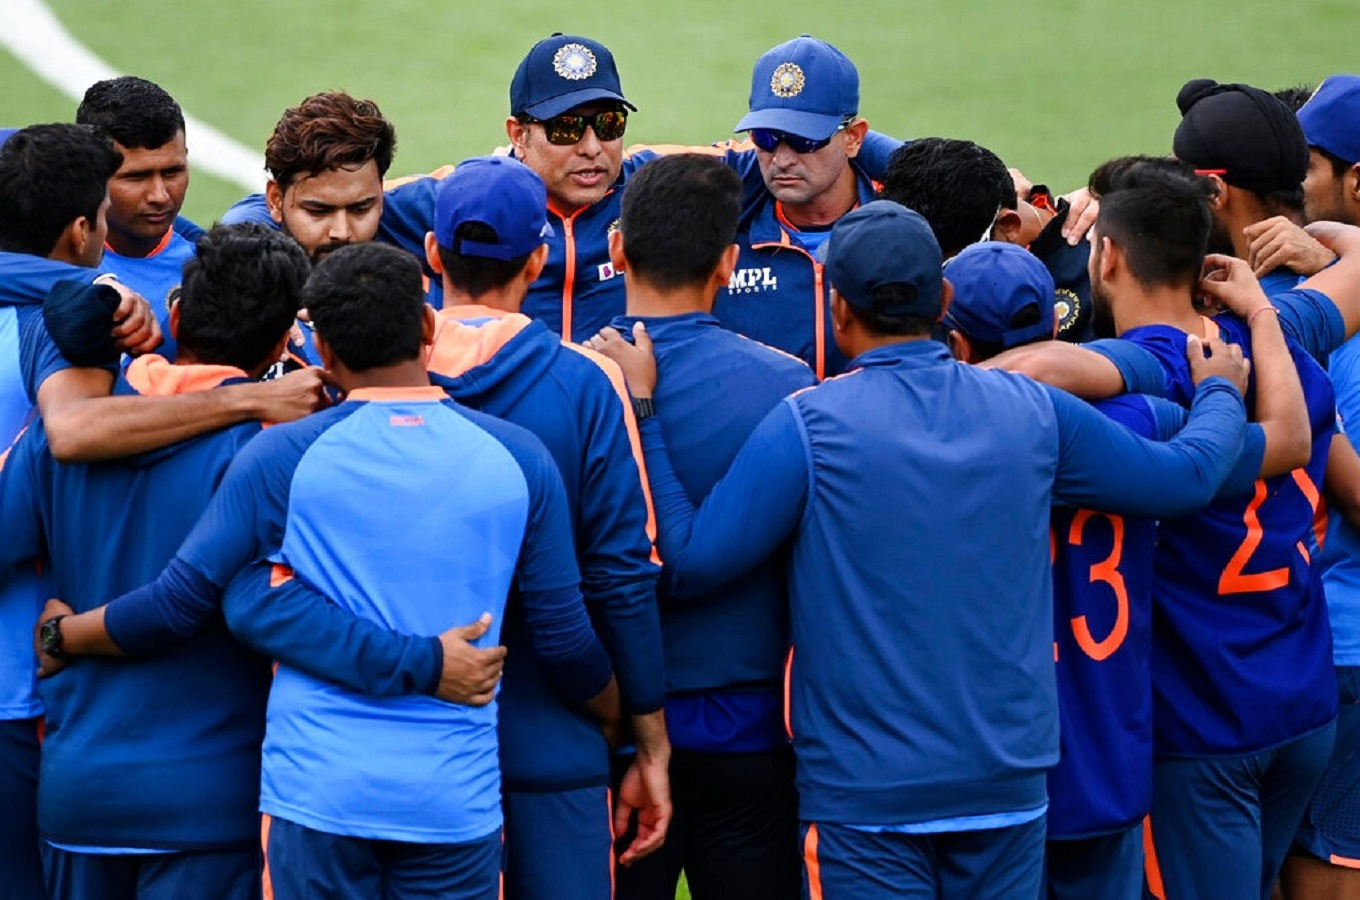  भारत और न्‍यूजीलैंड के बीच वनडे सीरीज का आखिरी मैच 30 नवंबर को क्राइस्टचर्च में खेला जाएगा